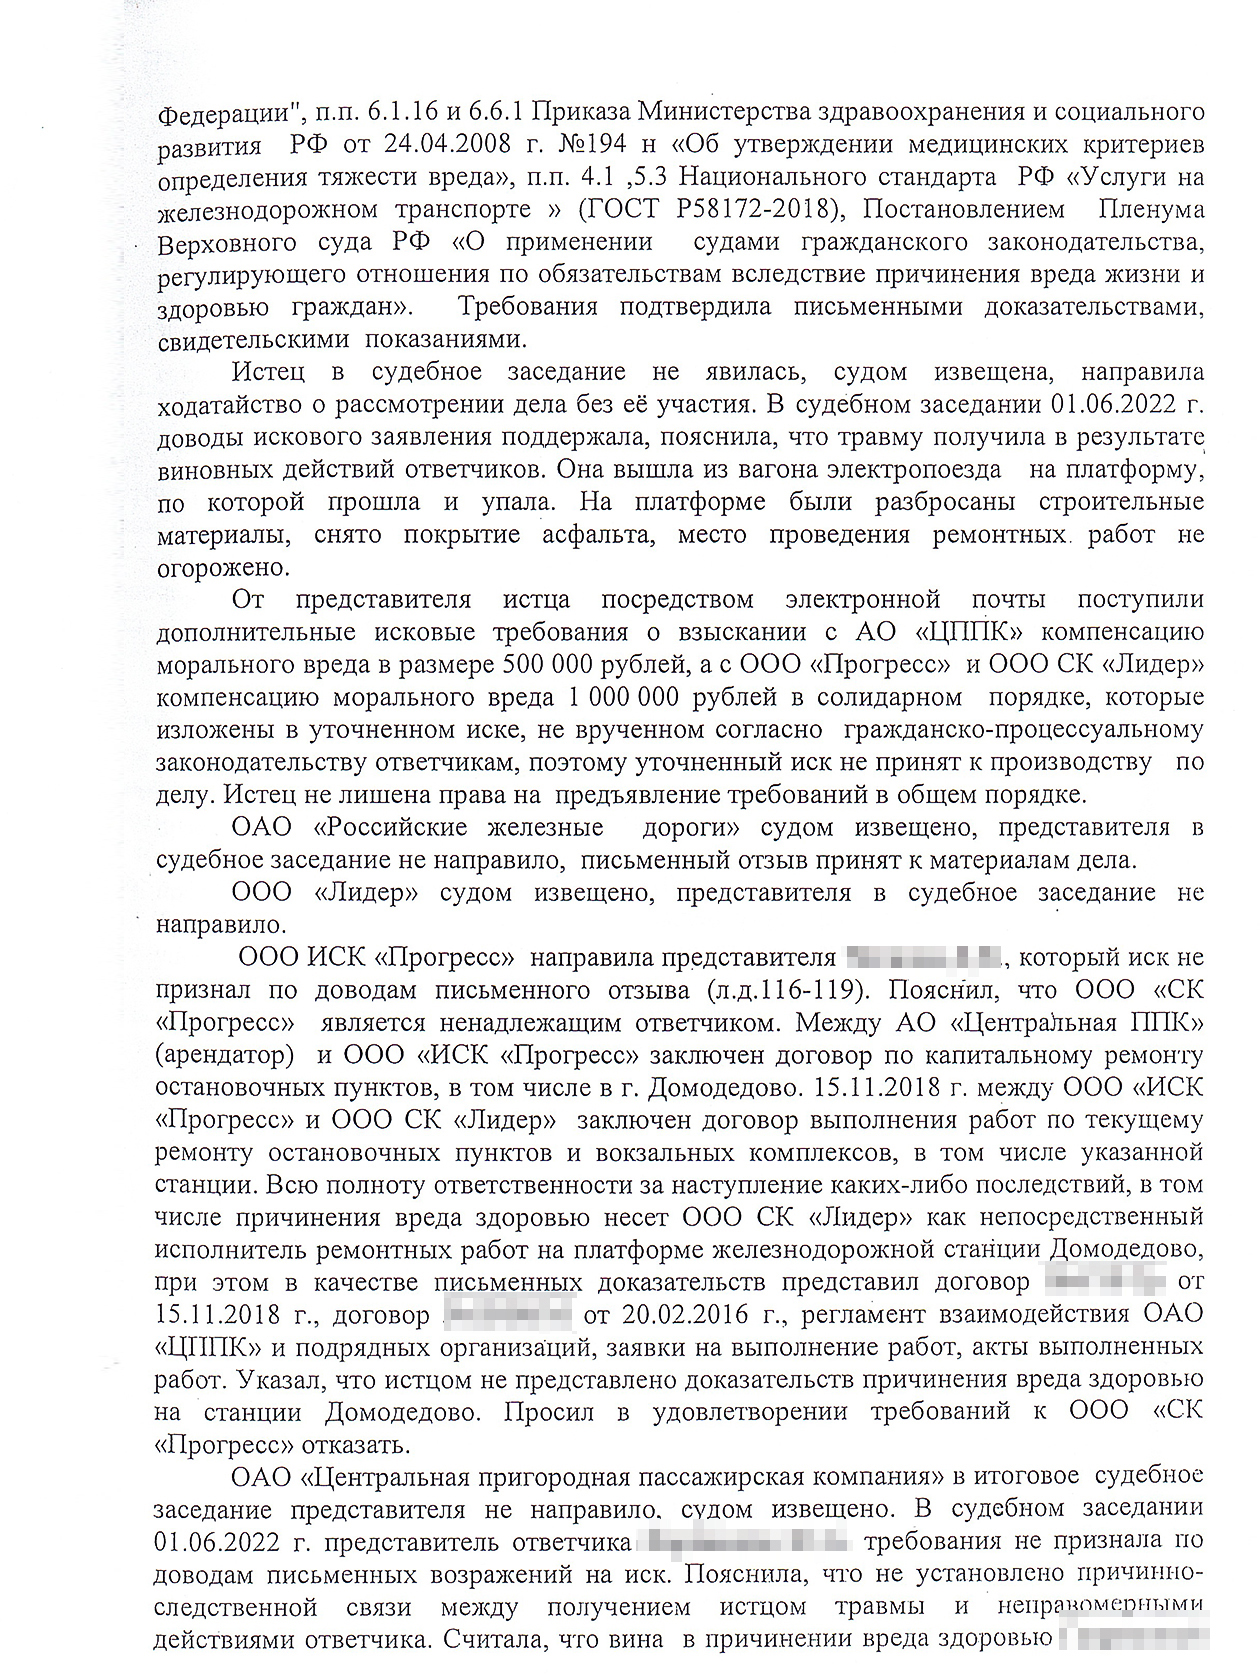 Решение Домодедовского городского суда Московской области, которым Любови присудили 100 000 ₽ компенсации